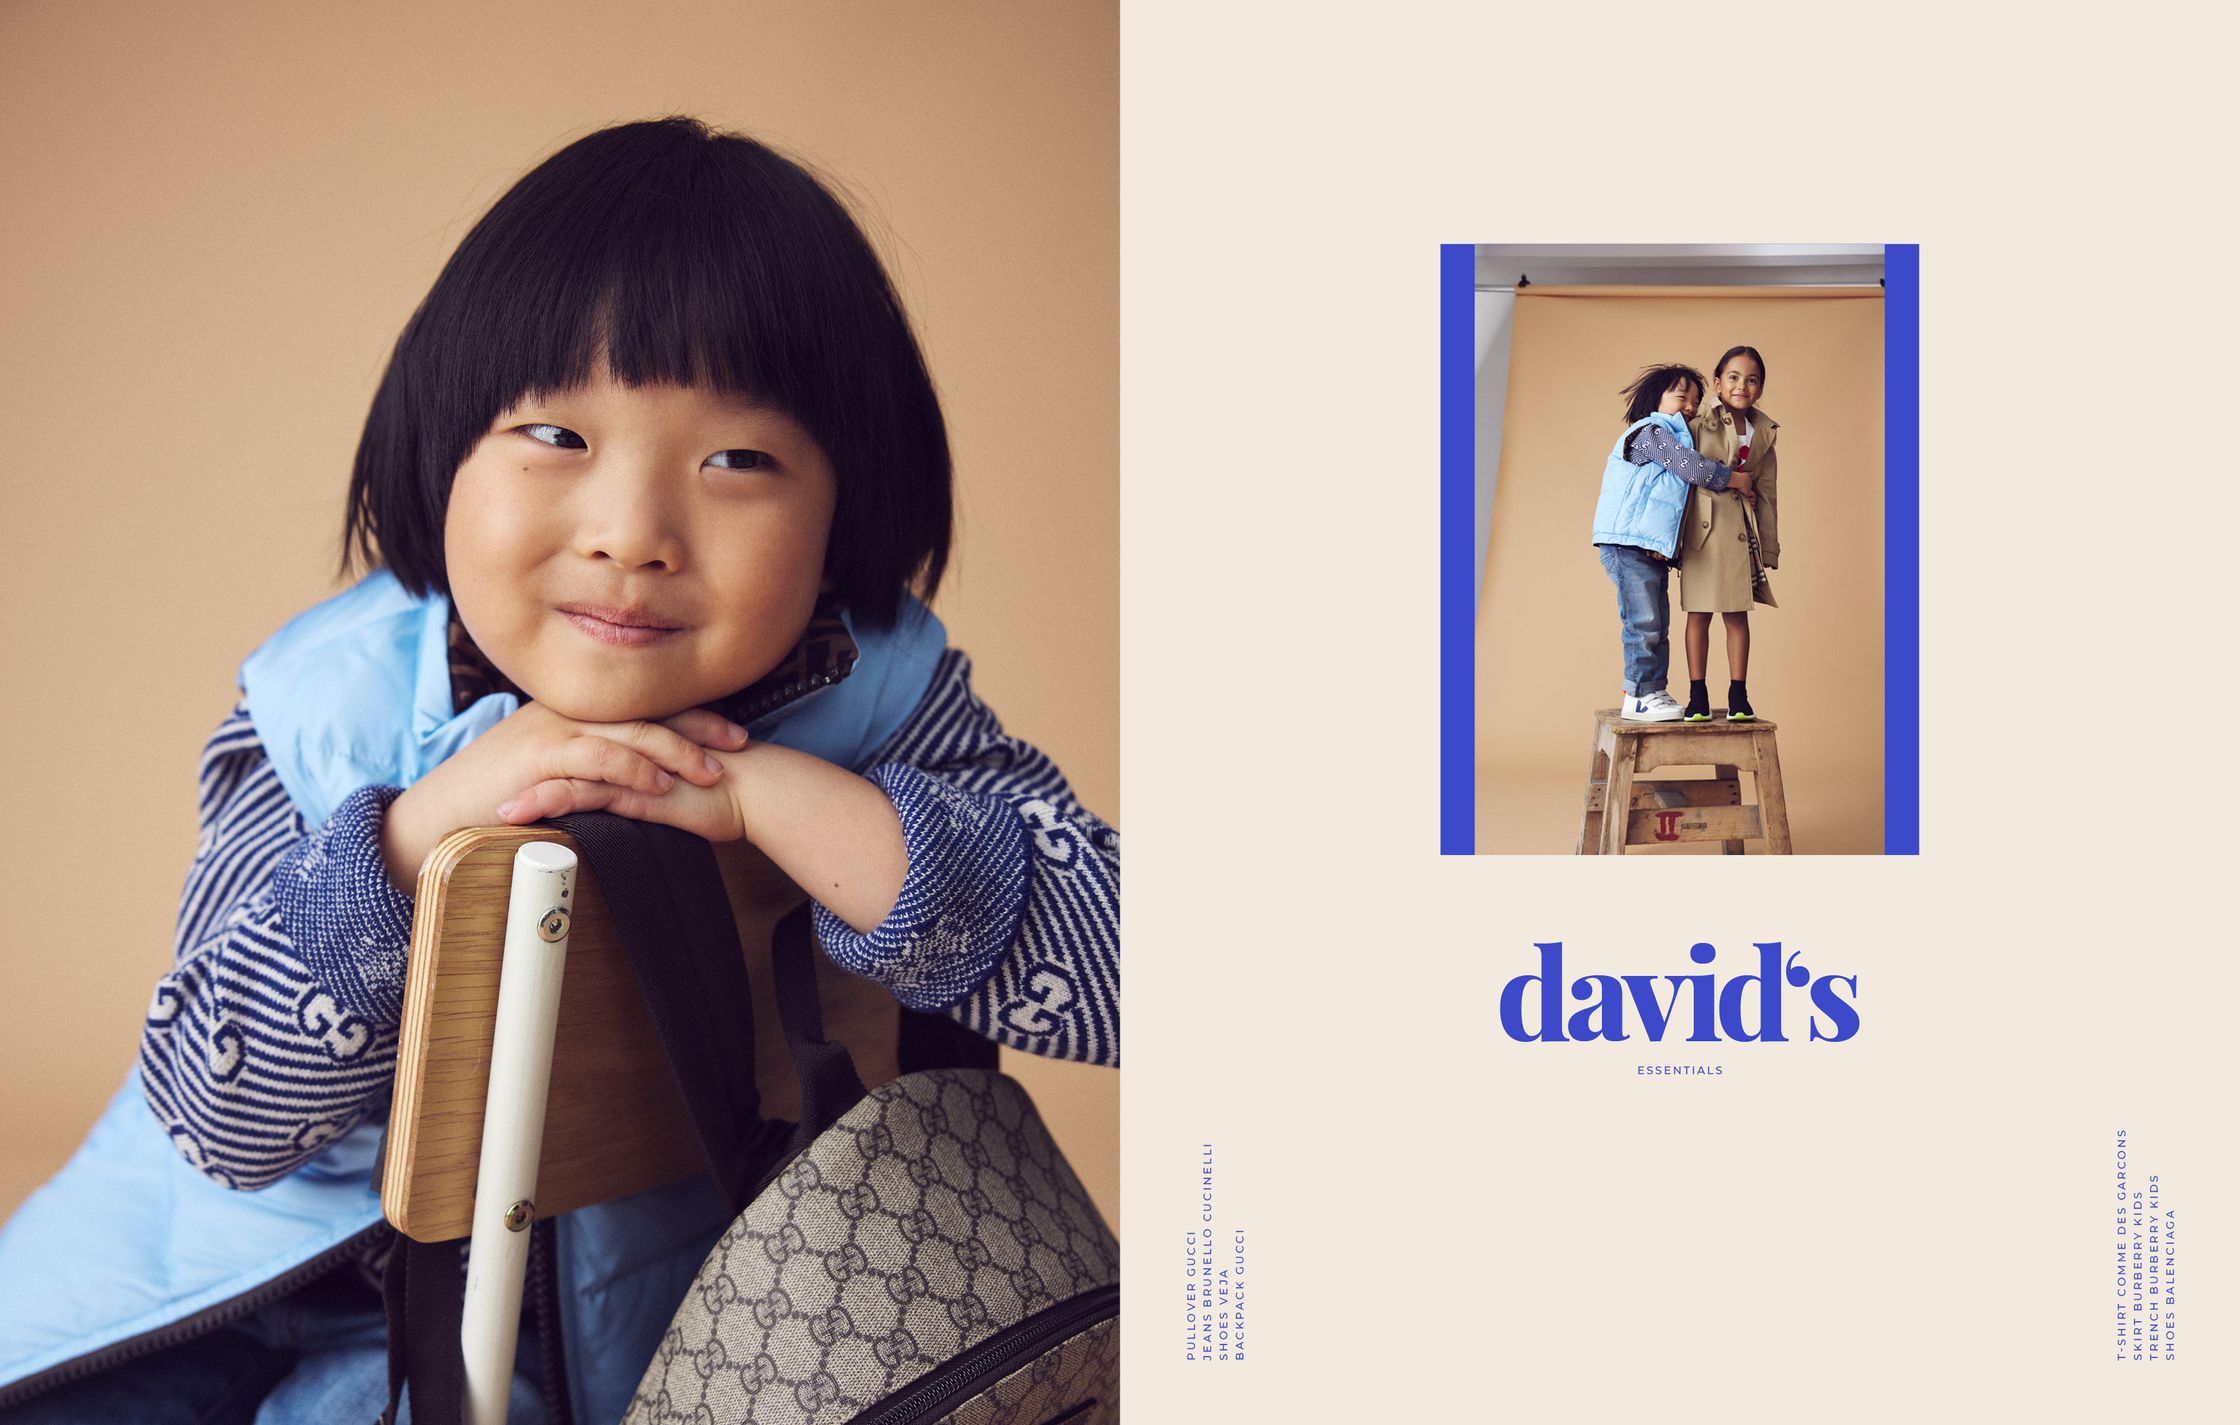 david's ad campaign - david's ad campaign - david's ad campaign -